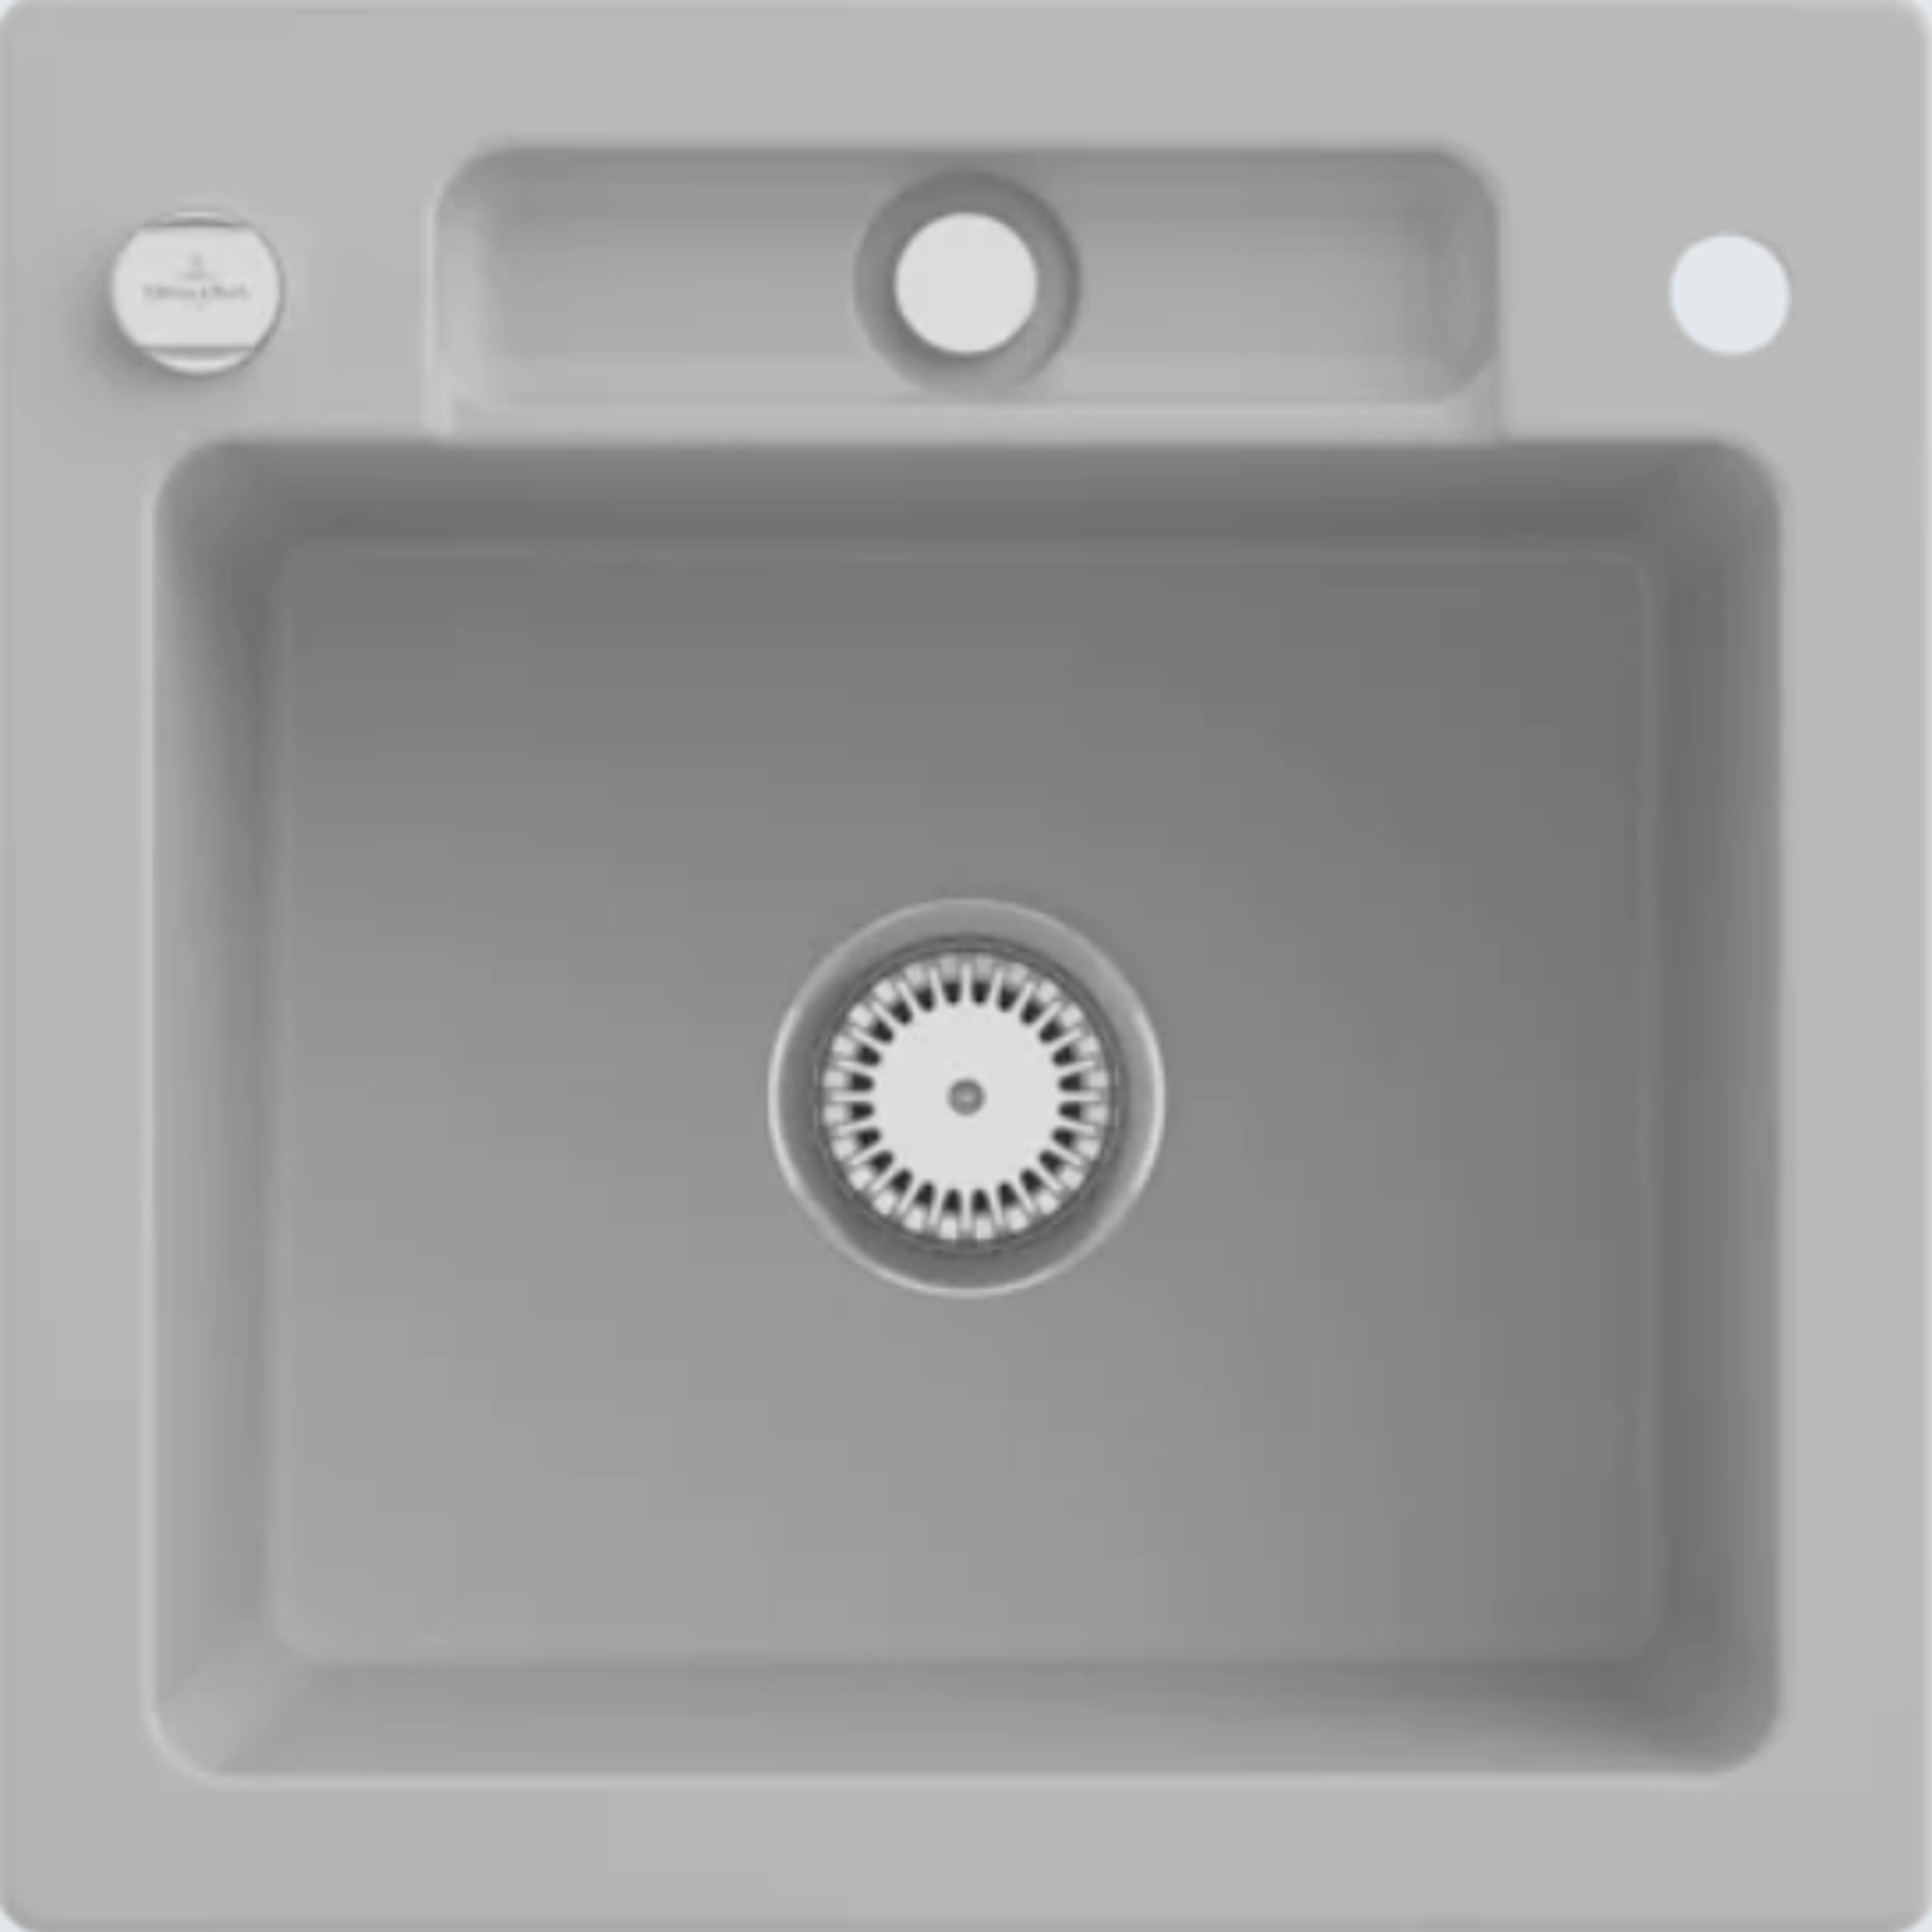 Villeroy & Boch Küchenspüle 3345 02 SM, Quadratisch, 51/22 cm, Siluet Serie, TitanCeram, flexibel drehbar | Spülbecken